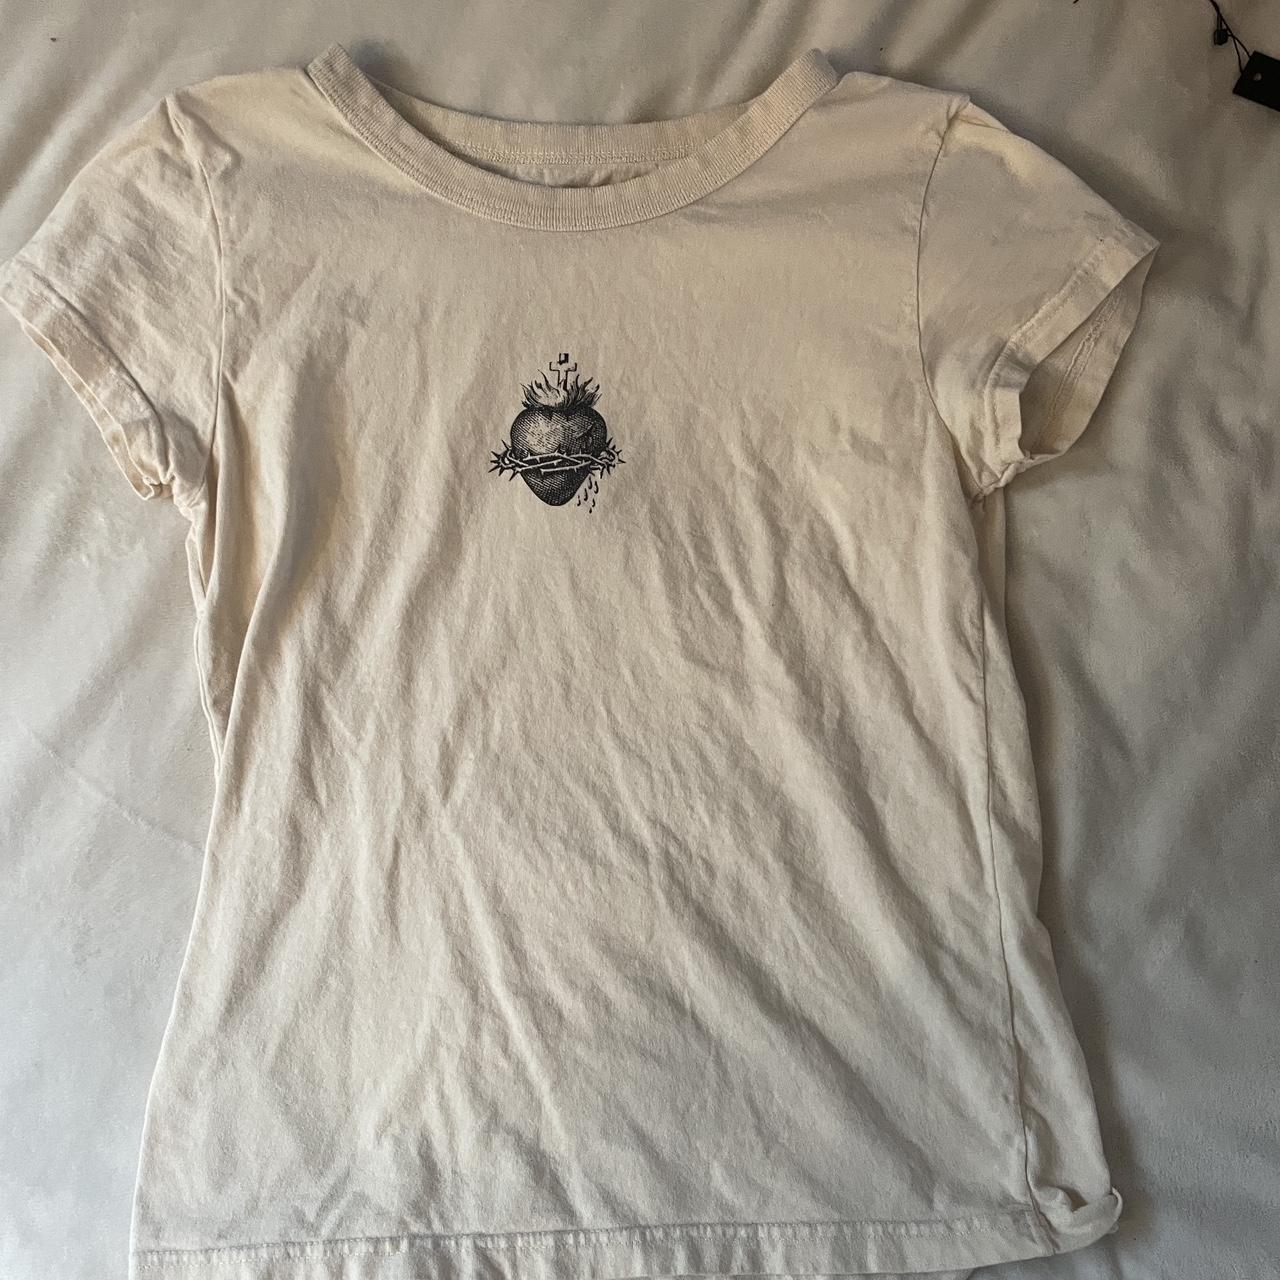 Brandy Melville Women's Tan T-shirt | Depop